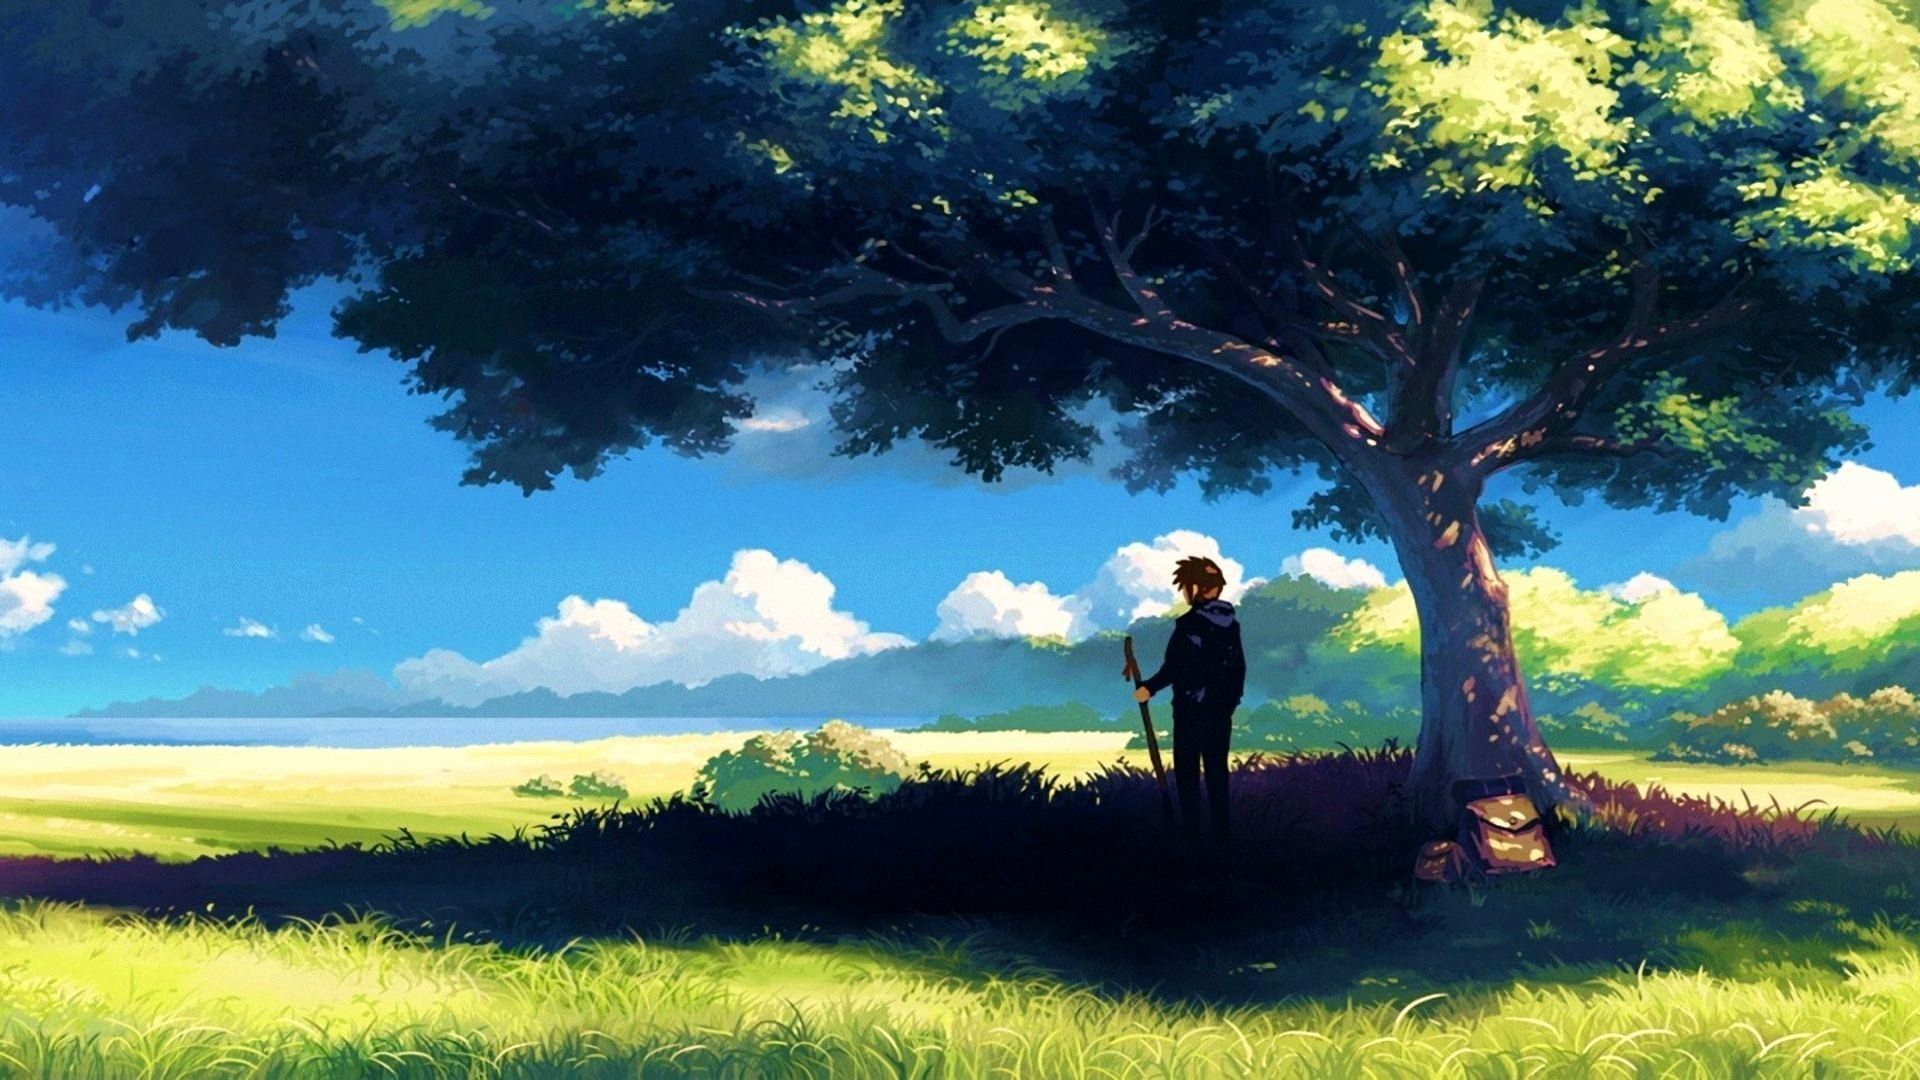 Anime Landscape Unique Landscape Anime Colorful Sky 5 Centimeters